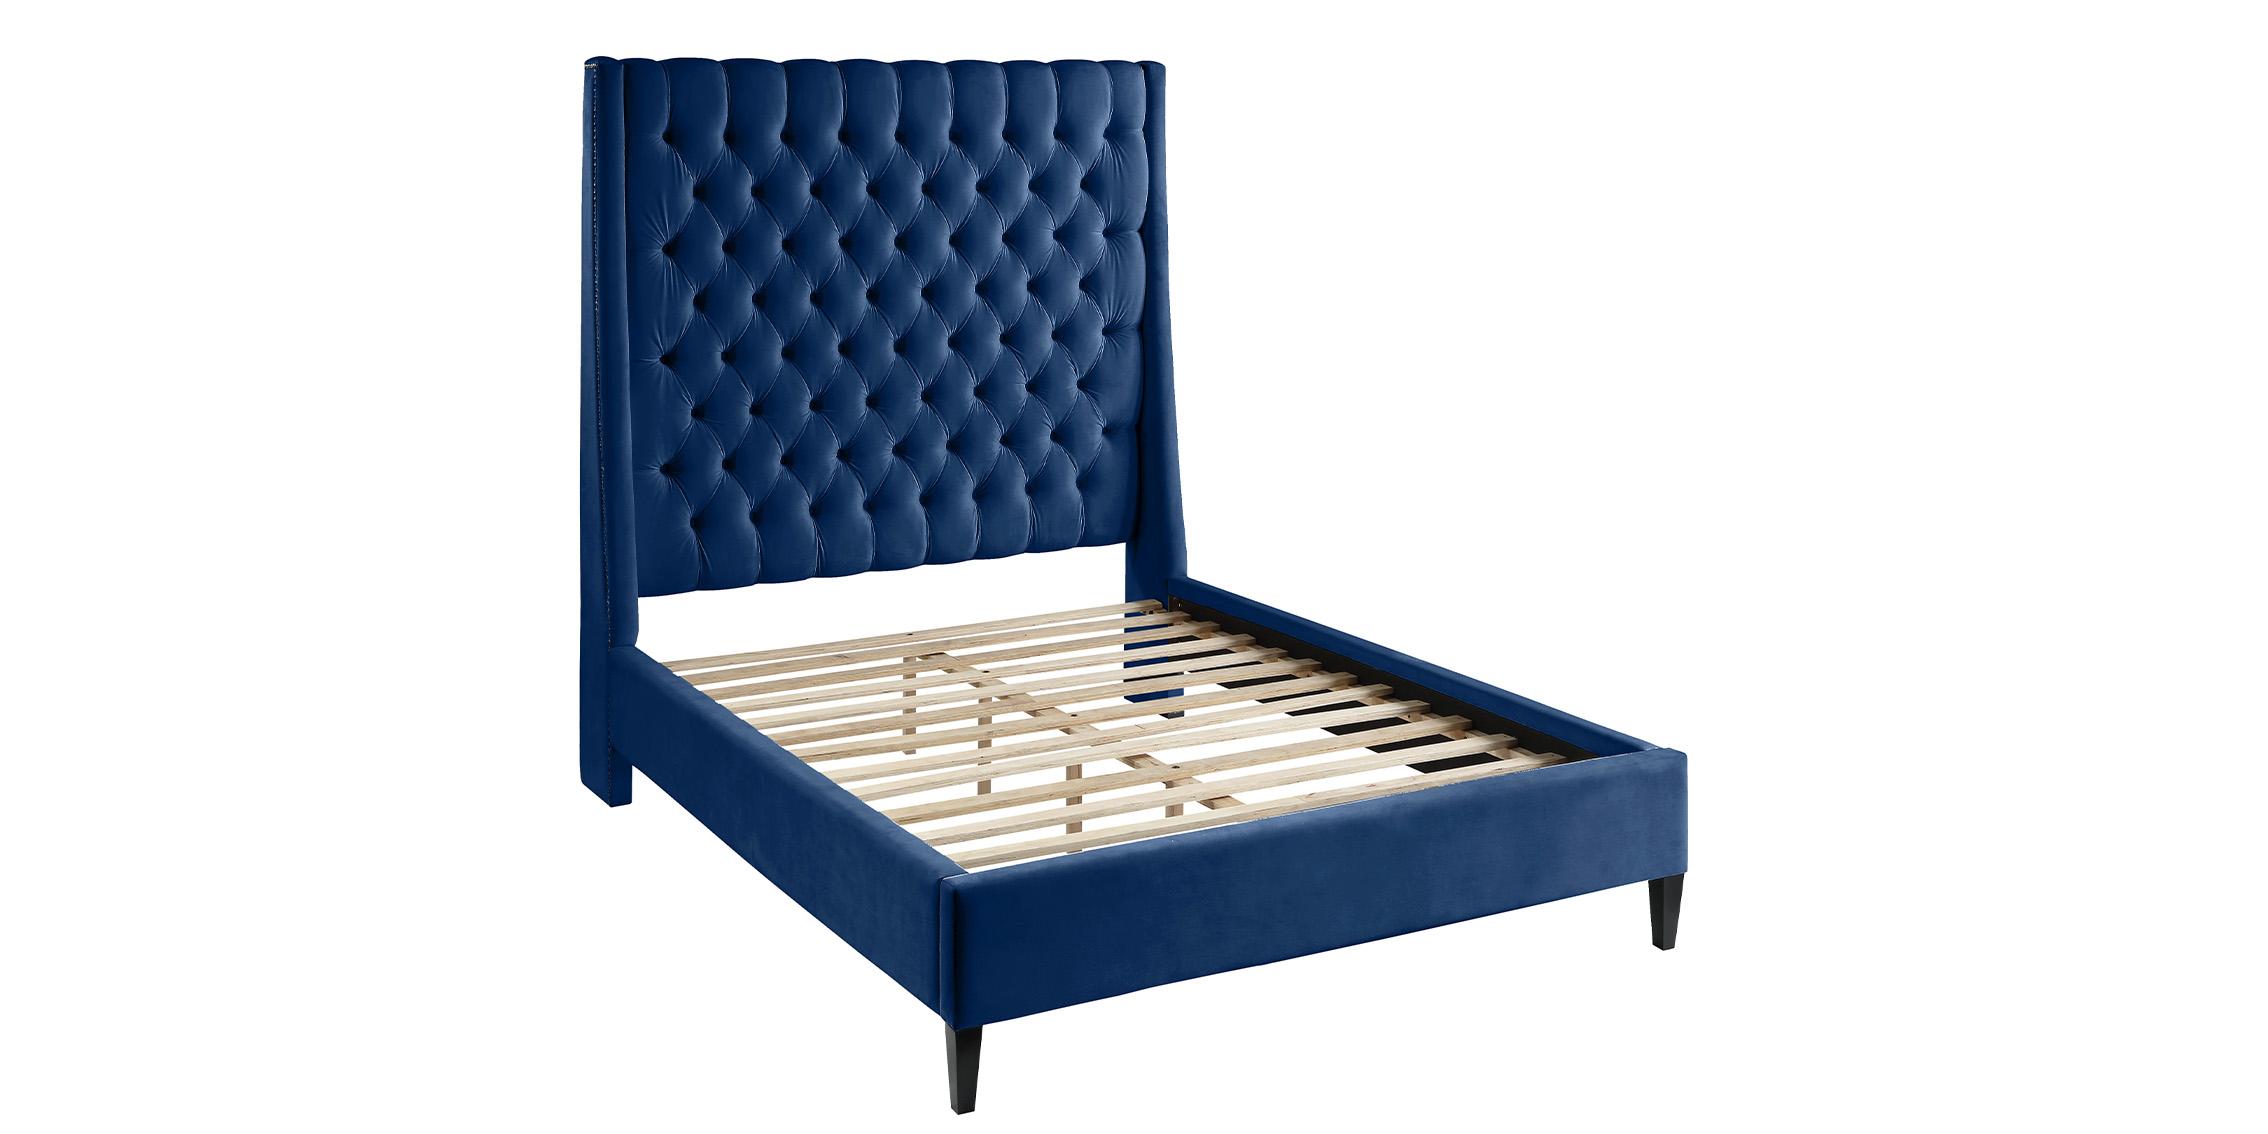 

    
FritzNavy-F Meridian Furniture Platform Bed
